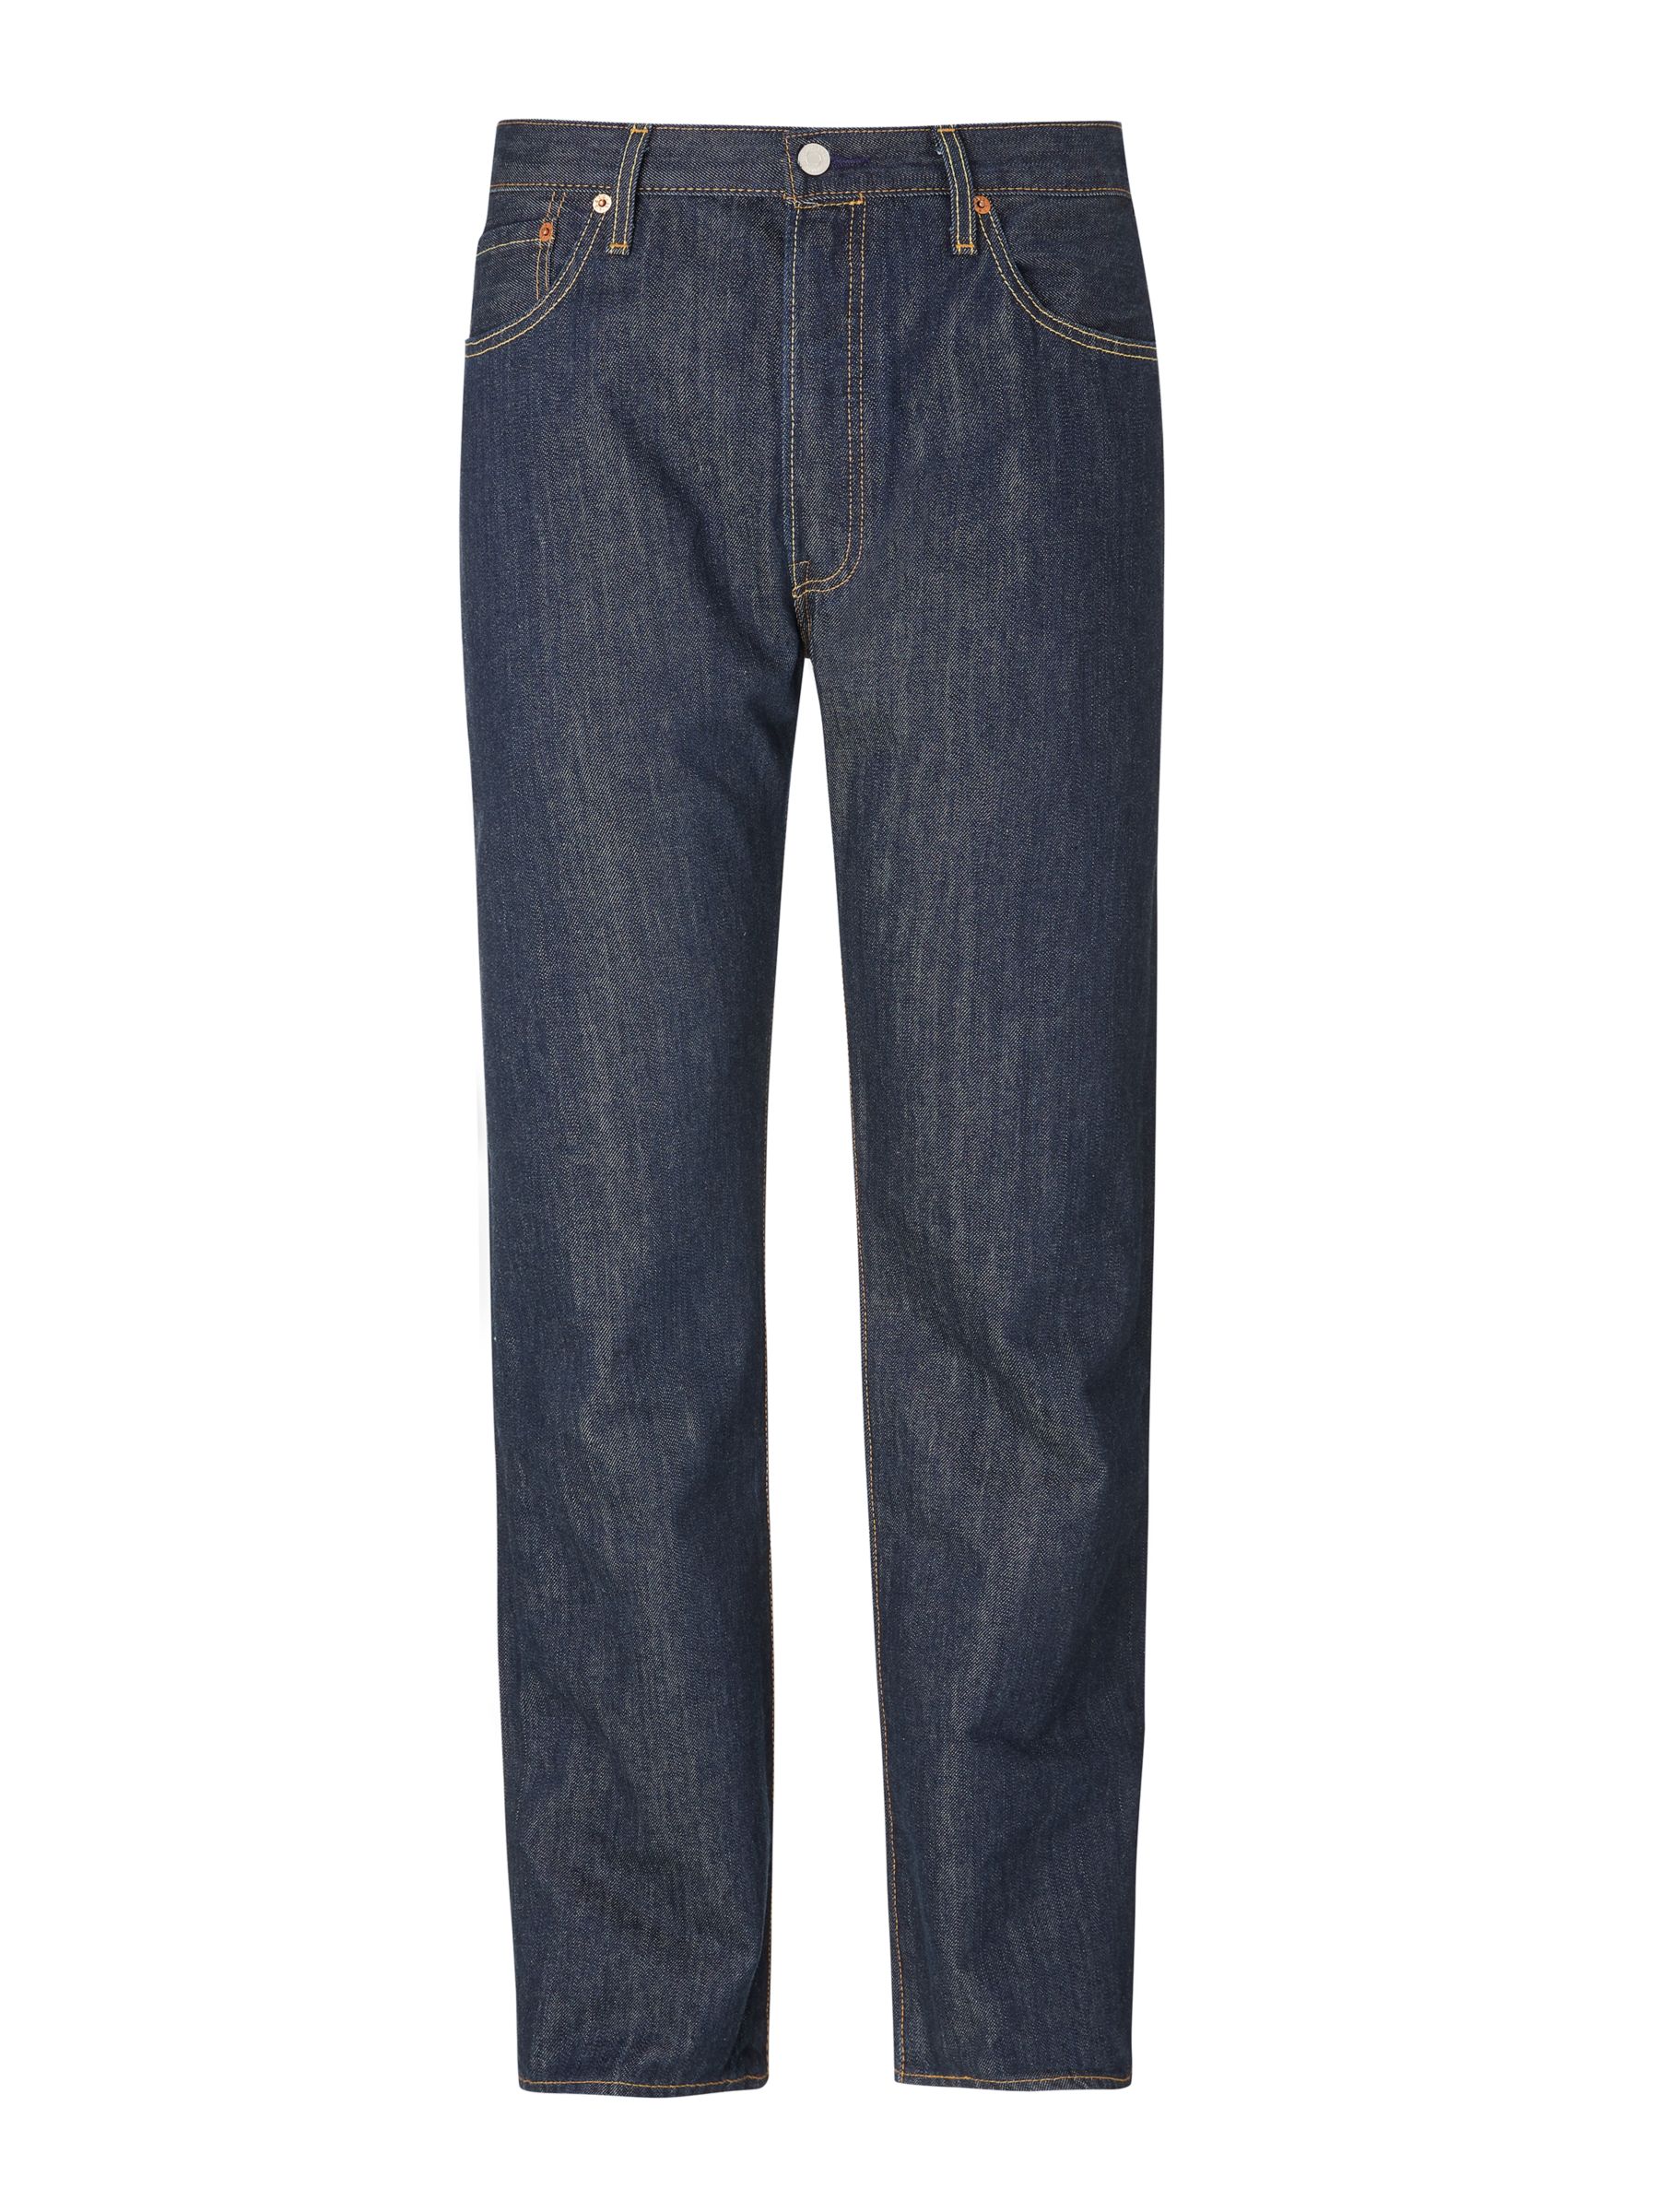 Levi's 501 Original Straight Jeans, Marlon, W30/L30